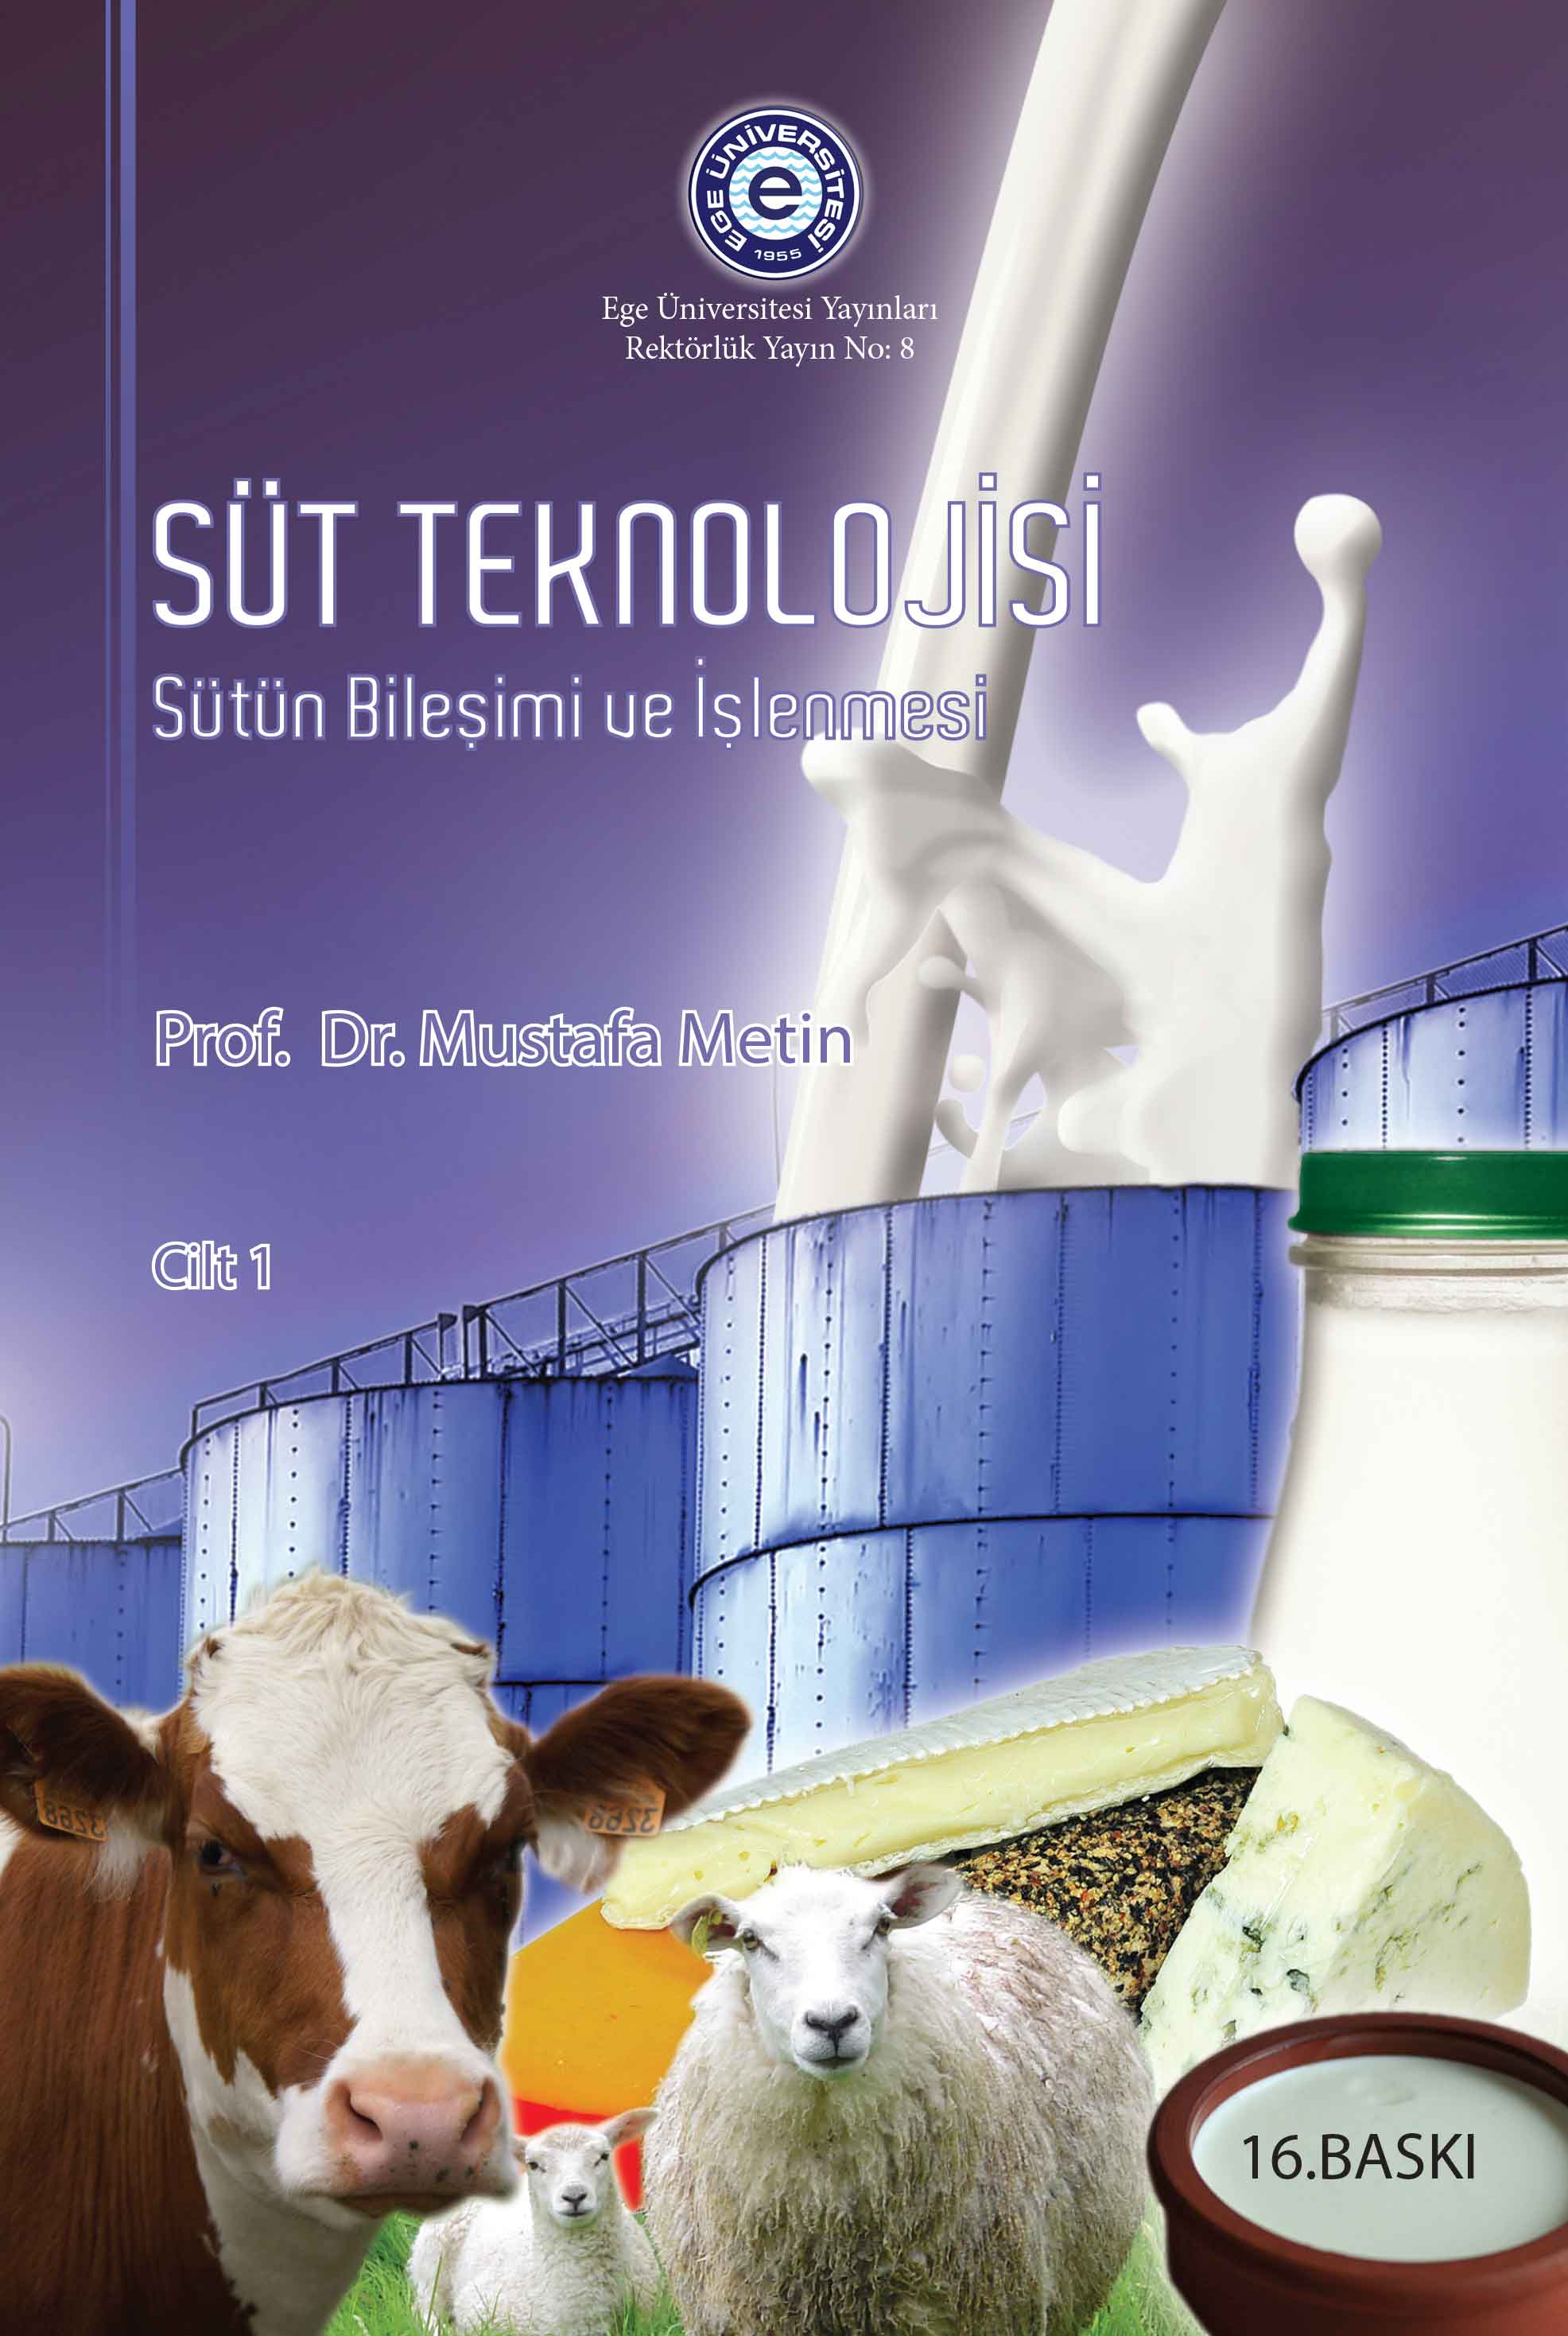 Süt Teknolojisi (Sütün Bileşimi ve İşlenmesi)